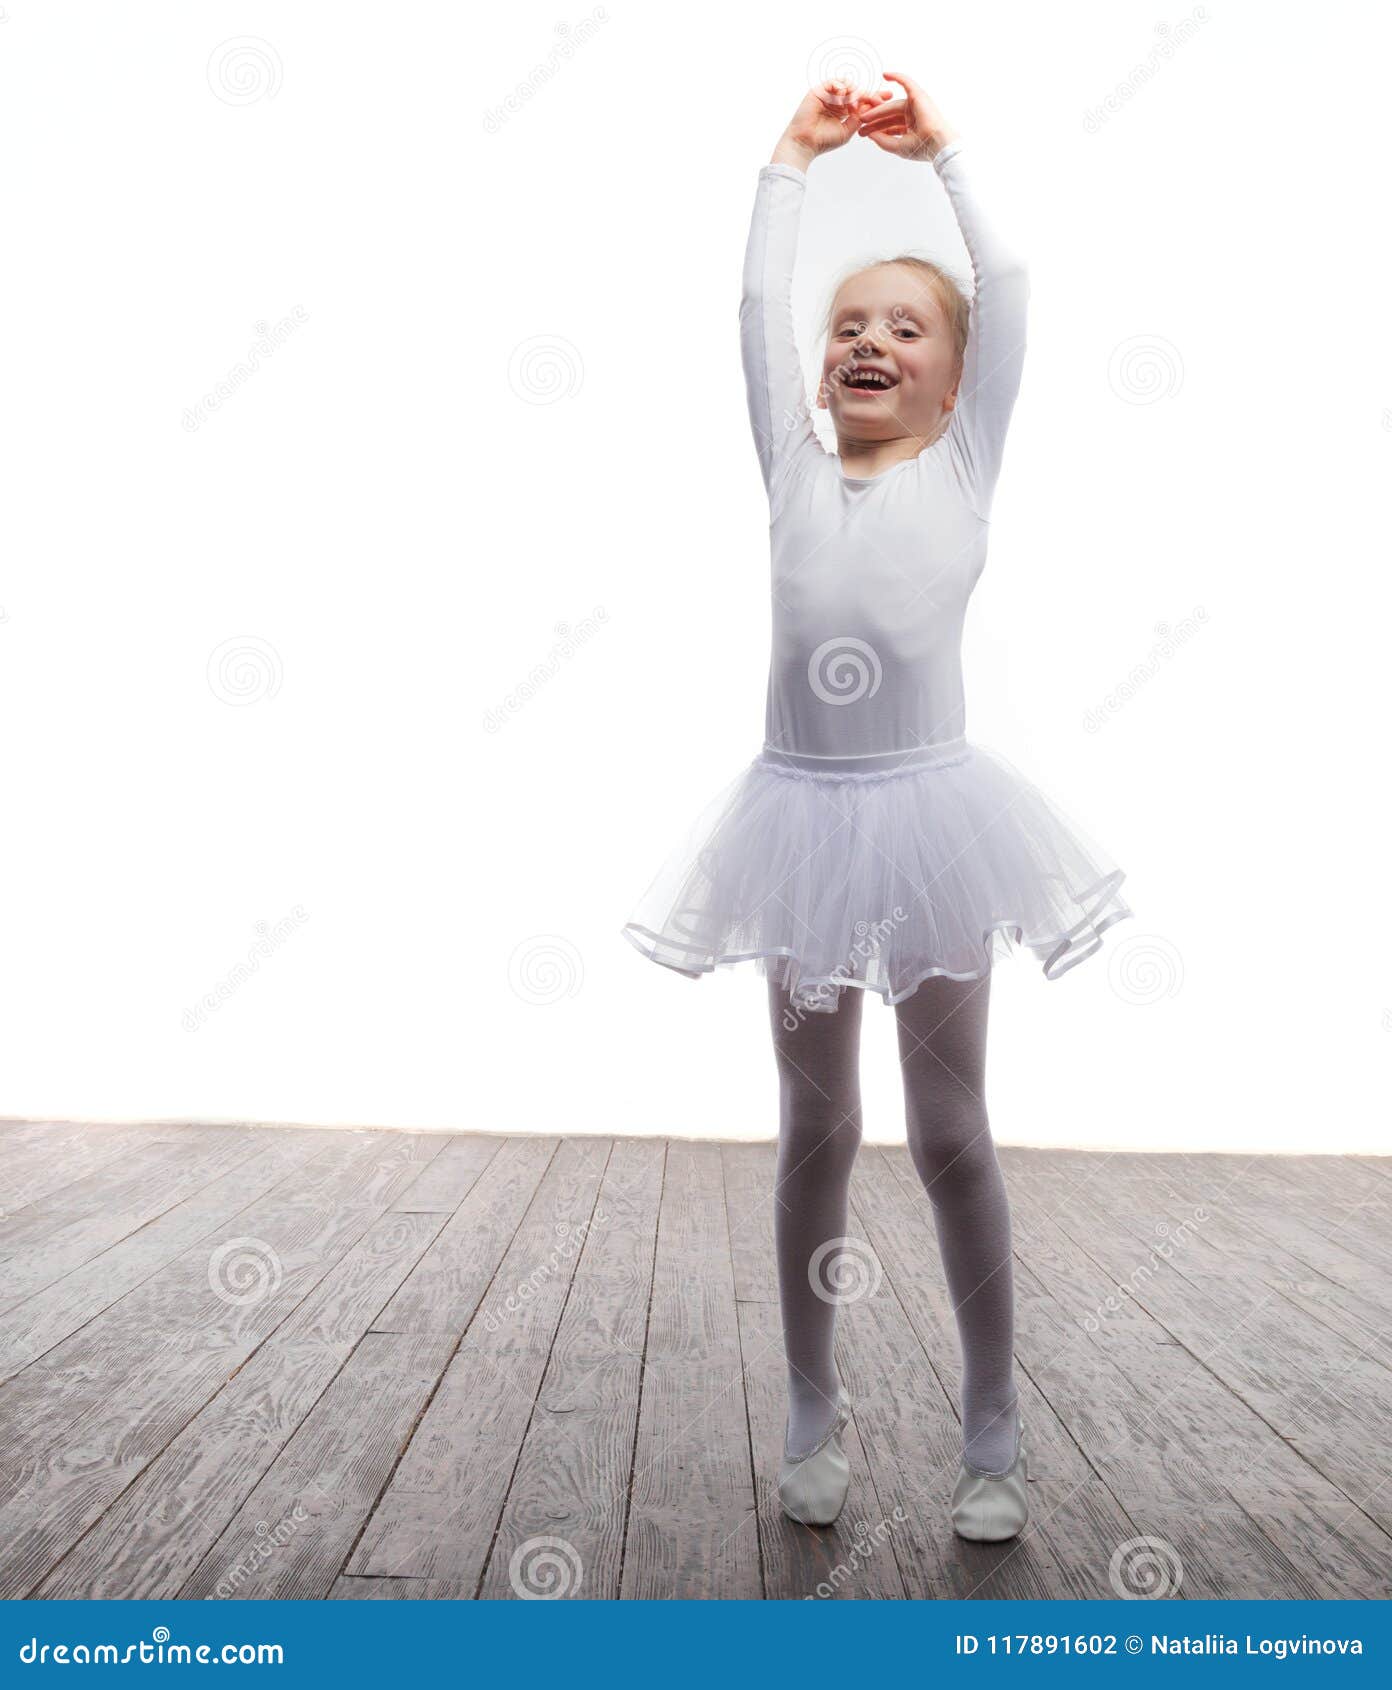 Fille Danseuse De Ballet En Jupe Tutu De Ballet Blanc Dansant Sur Fond  Blanc